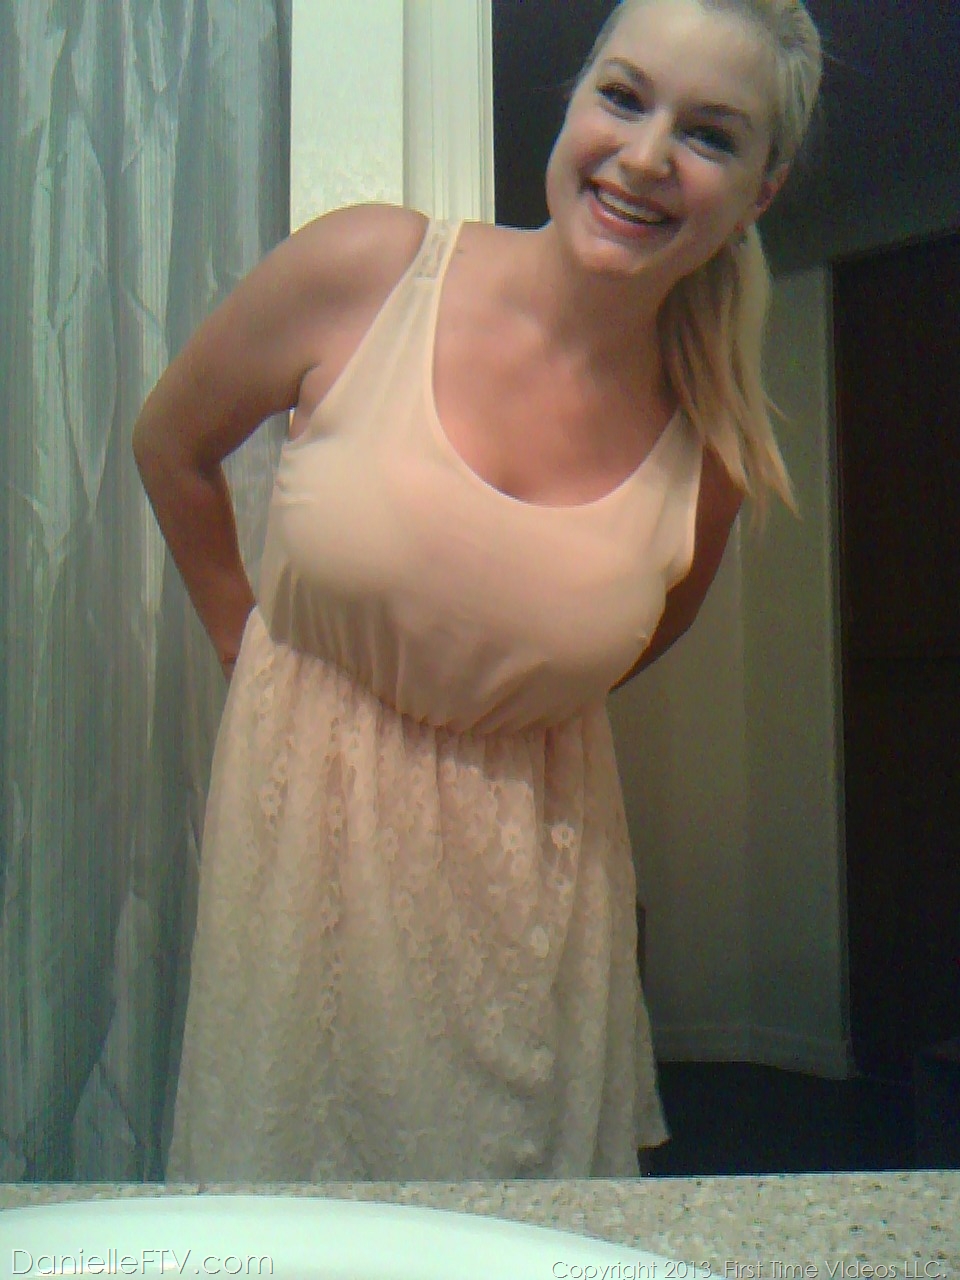 Blonde amateur Danielle Ftv dons numerous outfits for non nude selfies porn photo #422634173